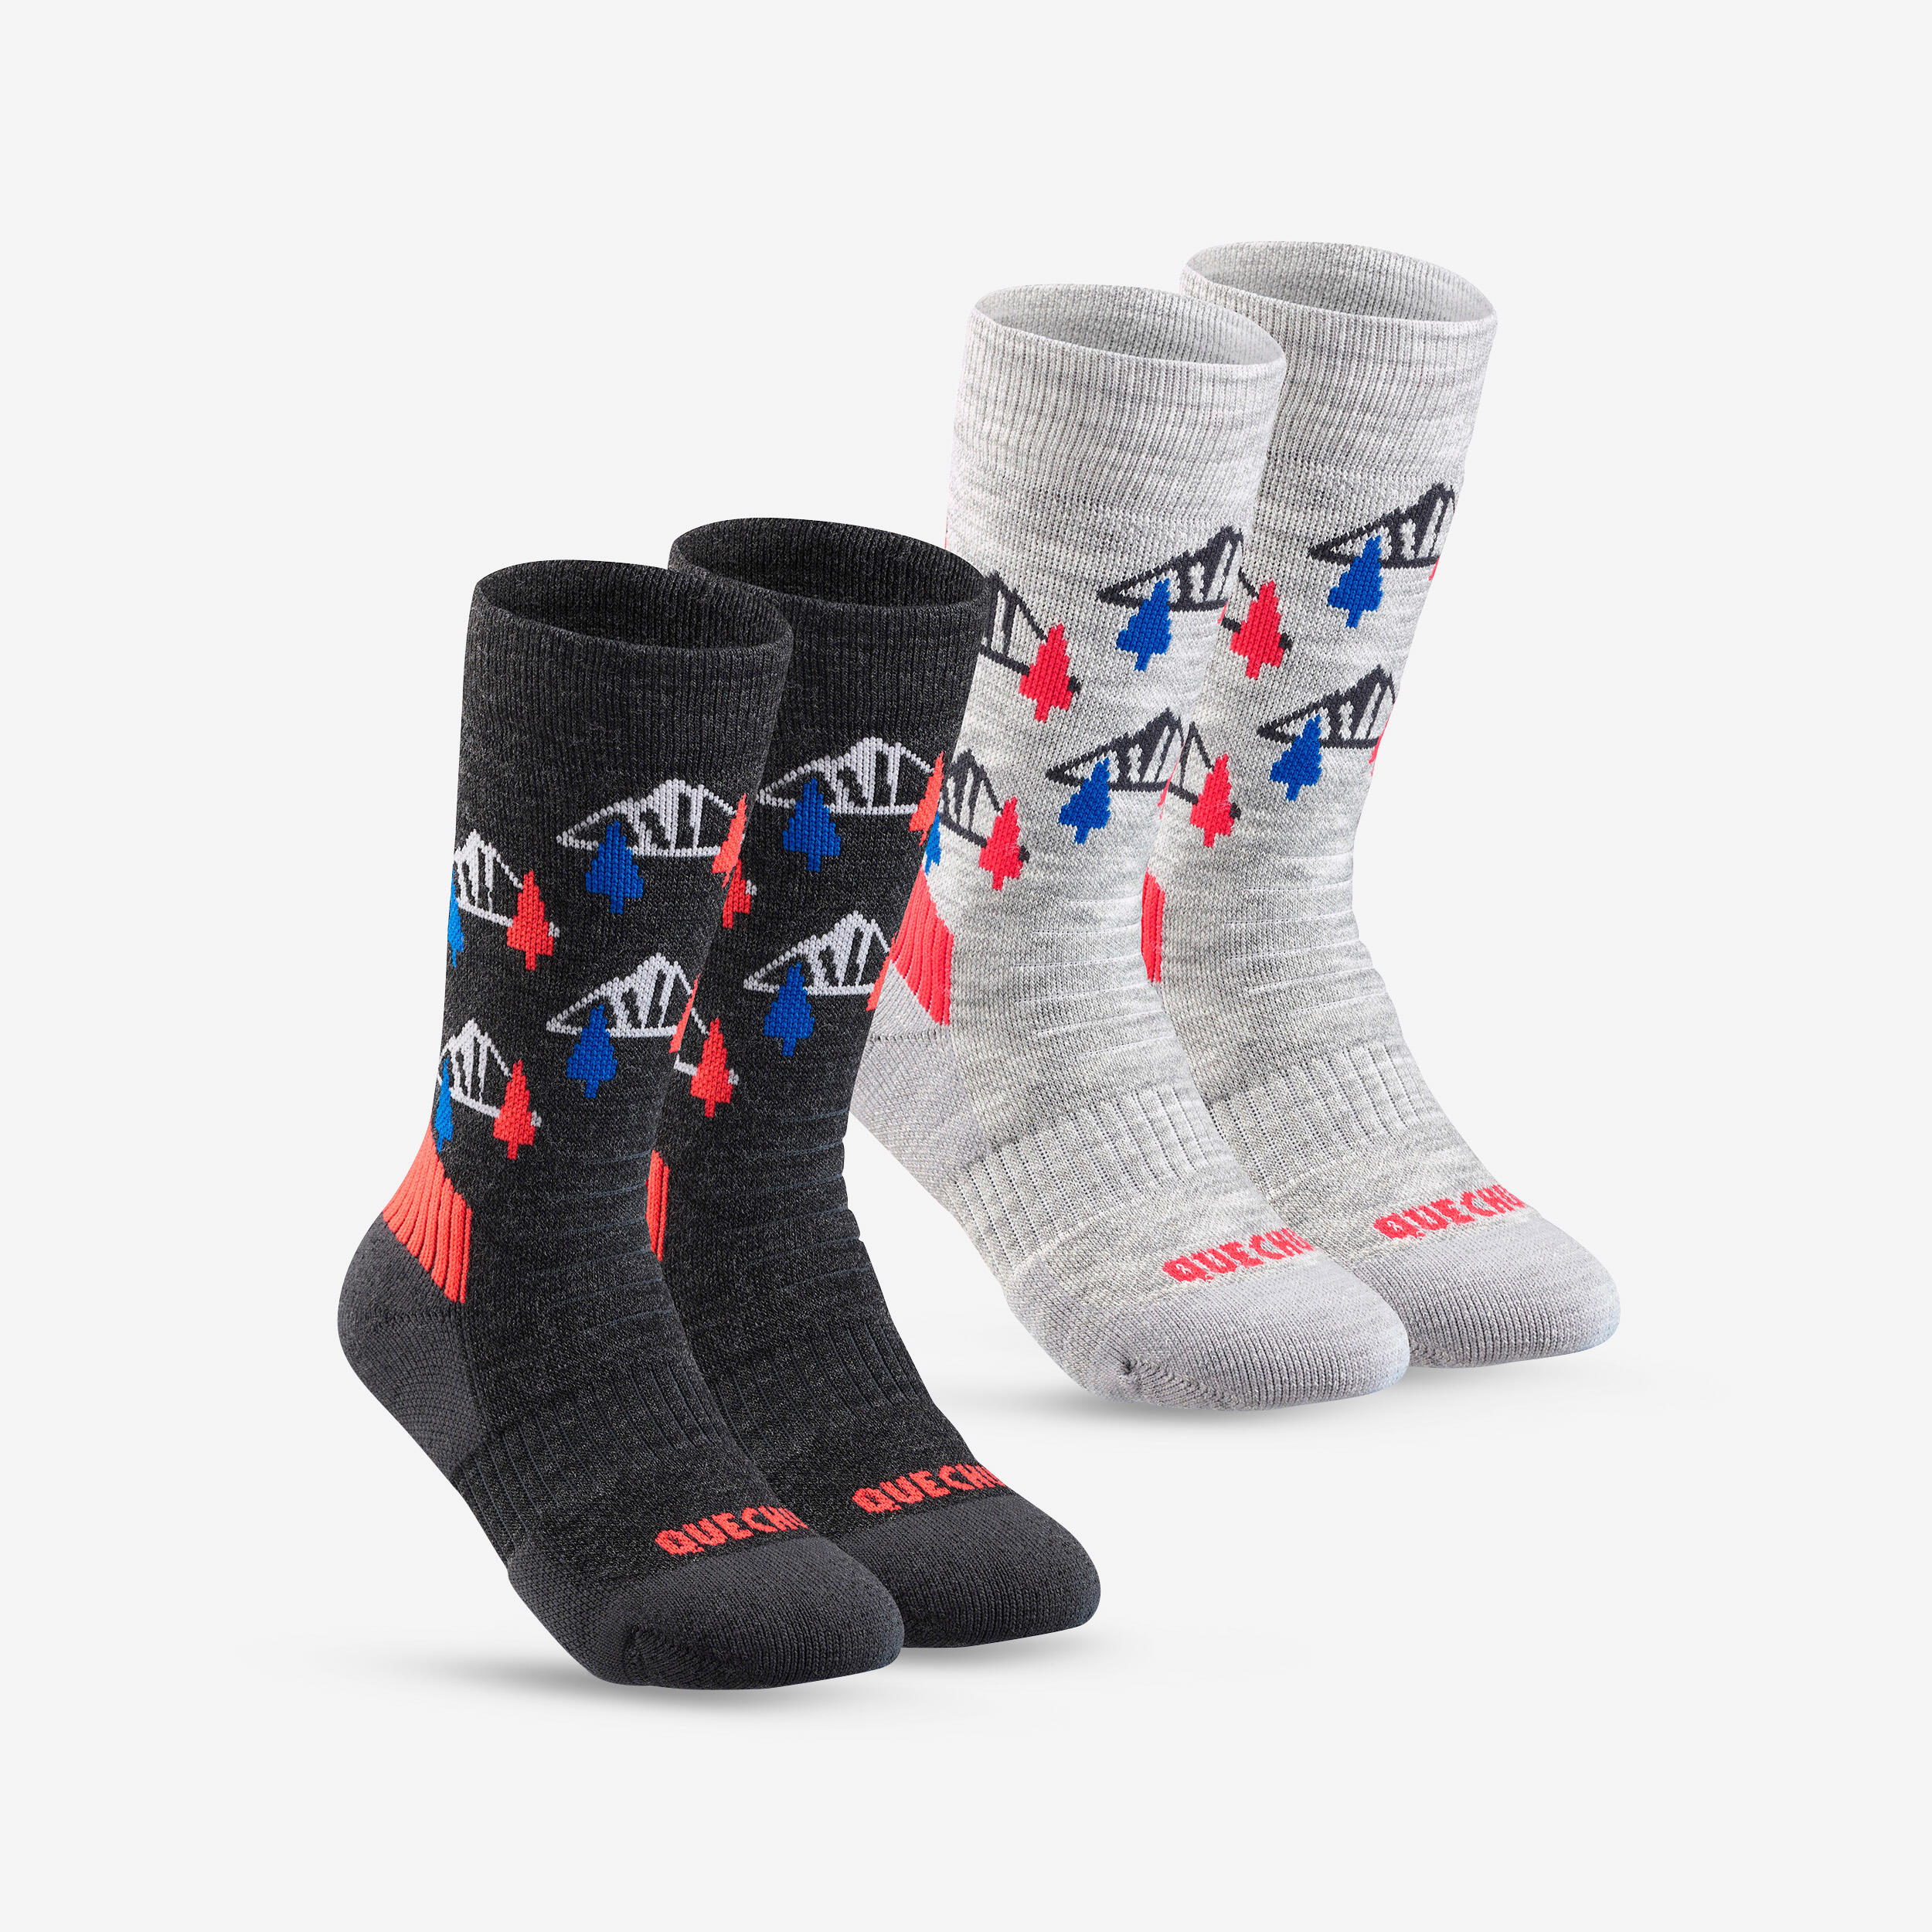 Kids’ Warm Hiking Socks SH100 Mid 2 Pairs 1/9